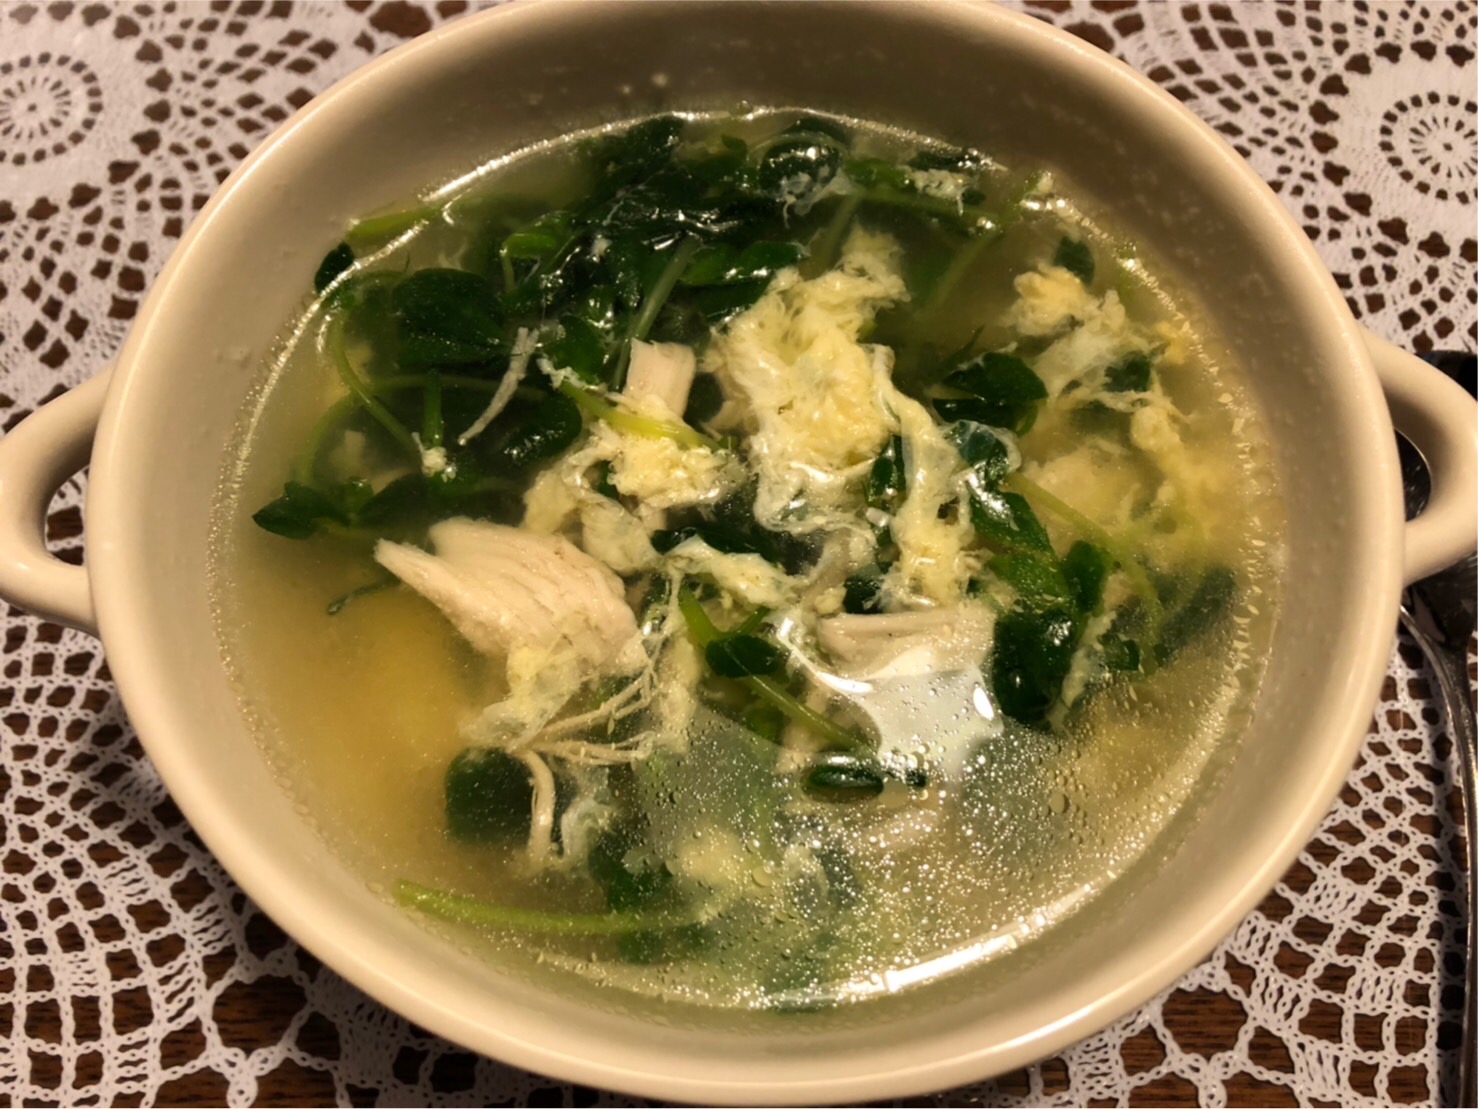 【栄養満点&簡単】豆苗と卵とサラダチキンのスープ